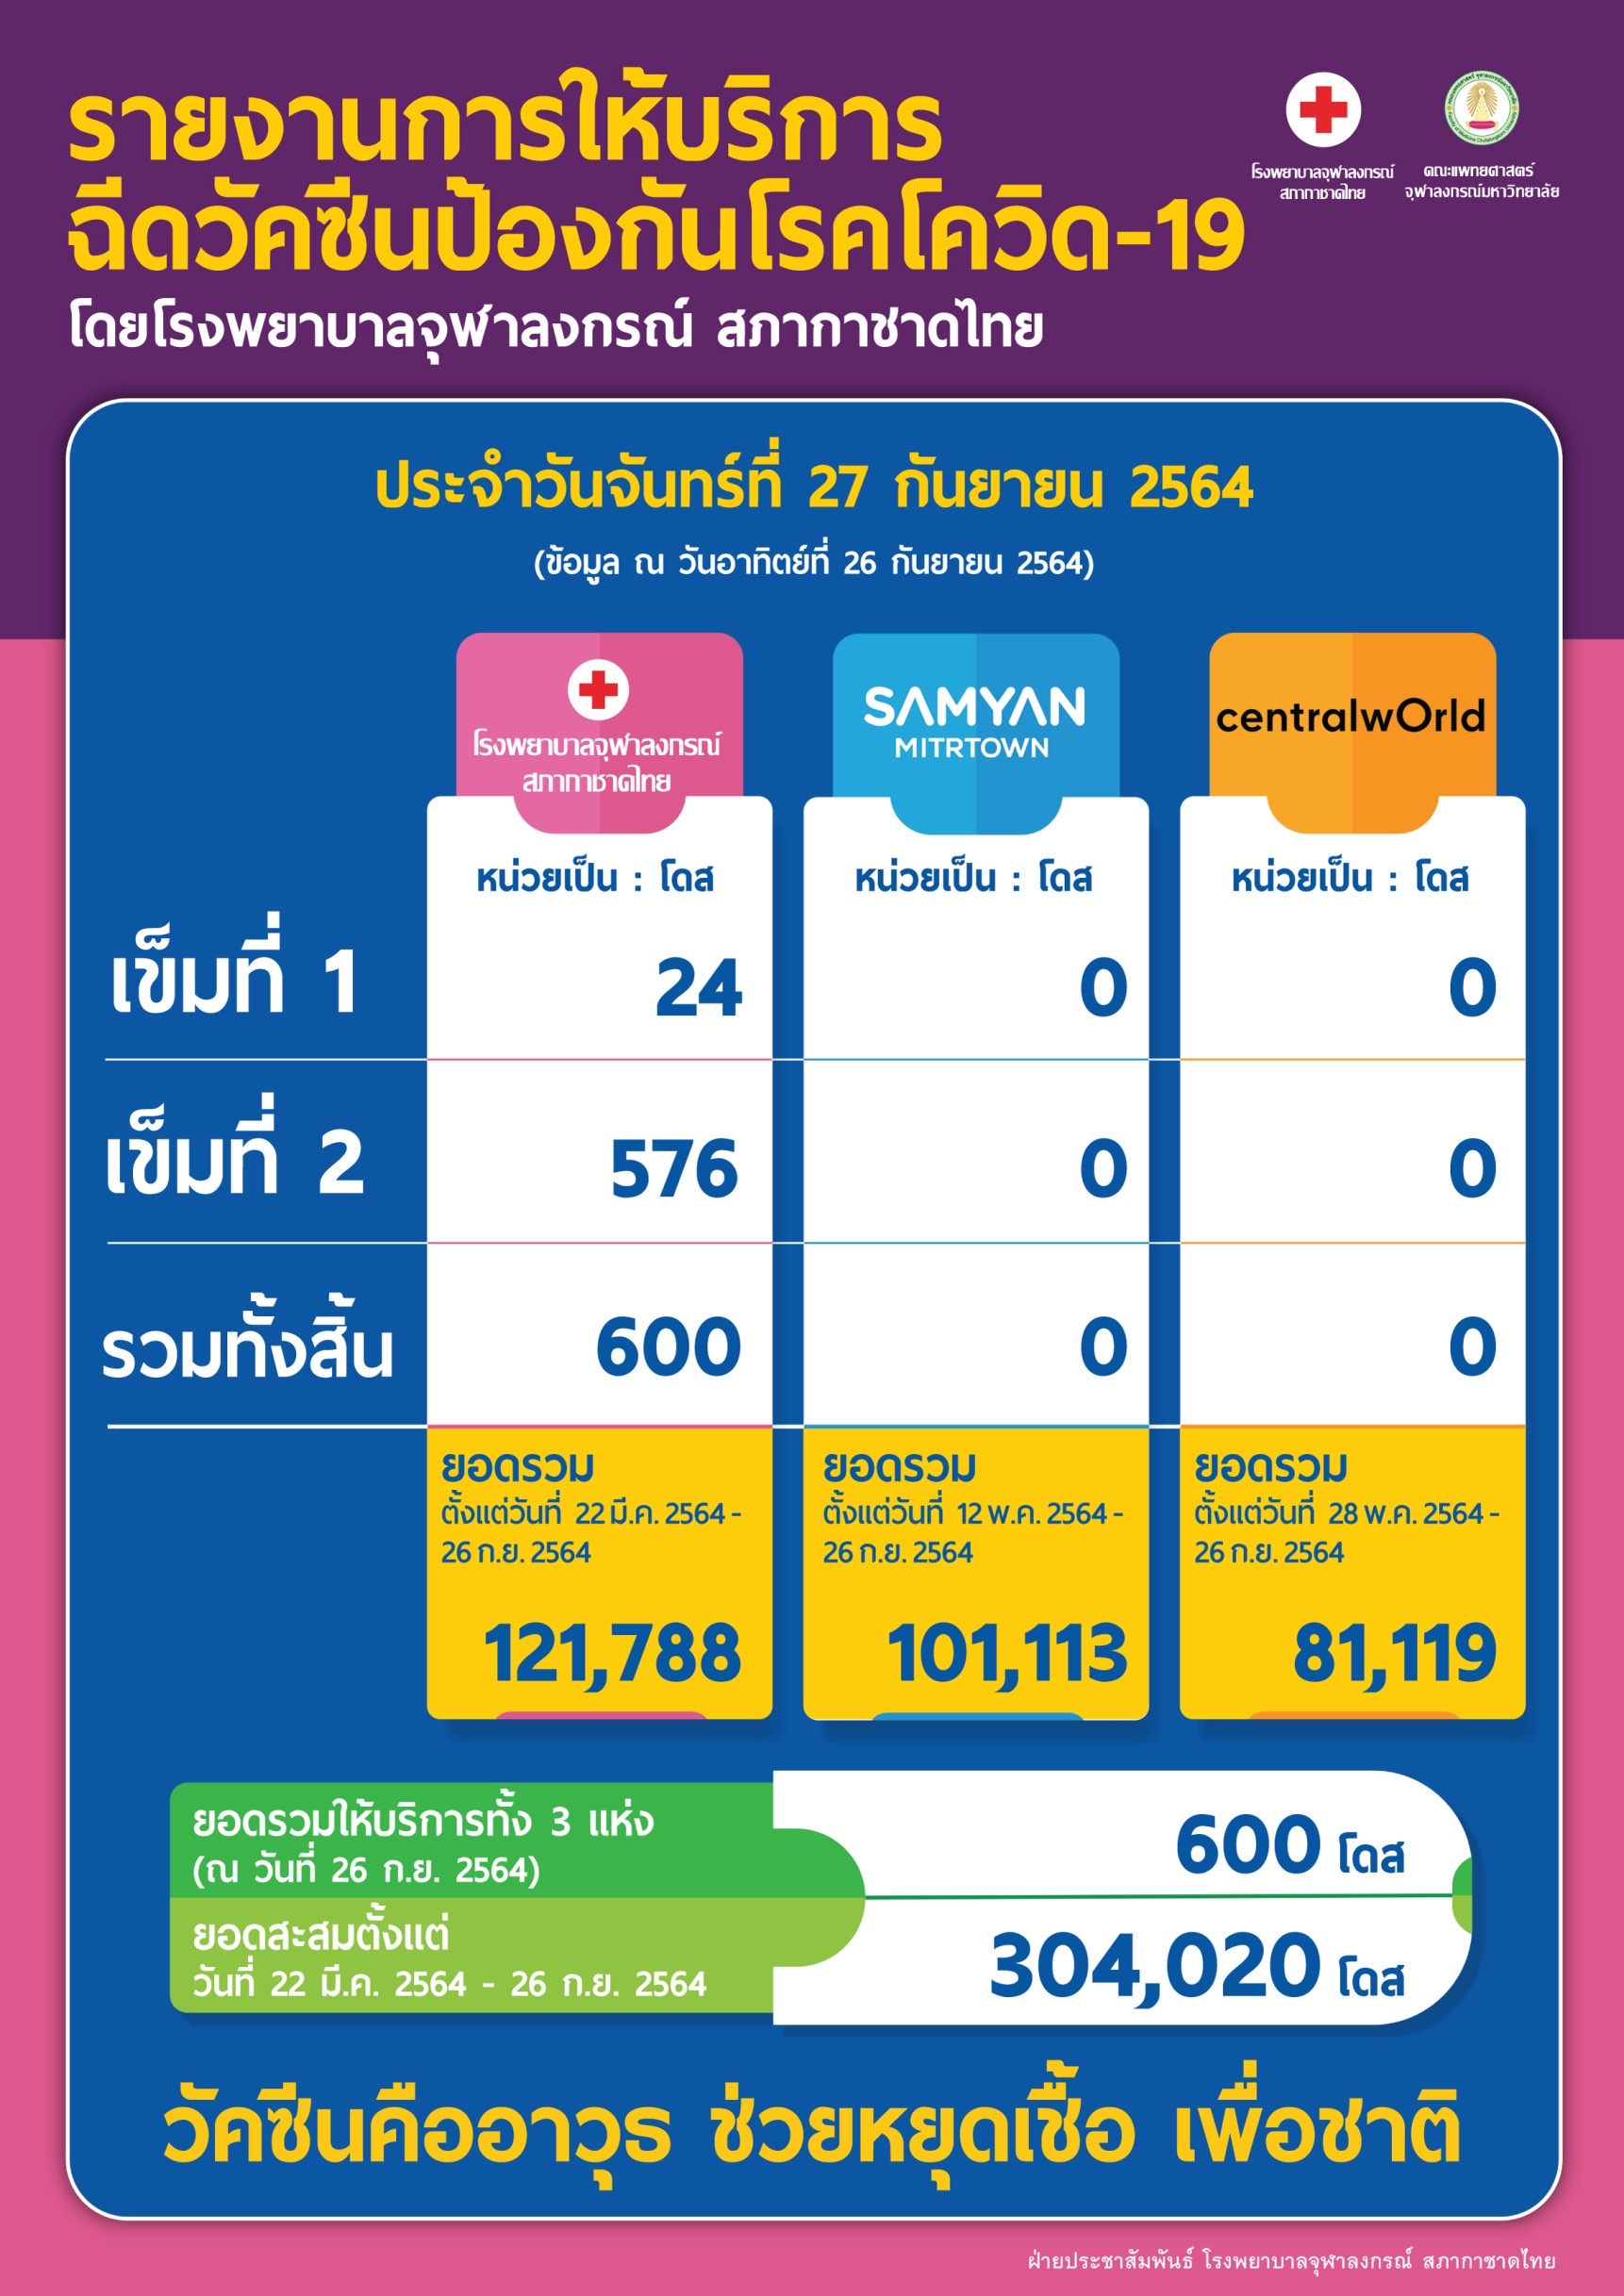 รายงานการให้บริการ ฉีดวัคซีนป้องกันโรคโควิด-19 โดยโรงพยาบาลจุฬาลงกรณ์ สภากาชาดไทย ประจำวันจันทร์ที่ 27 กันยายน 2564